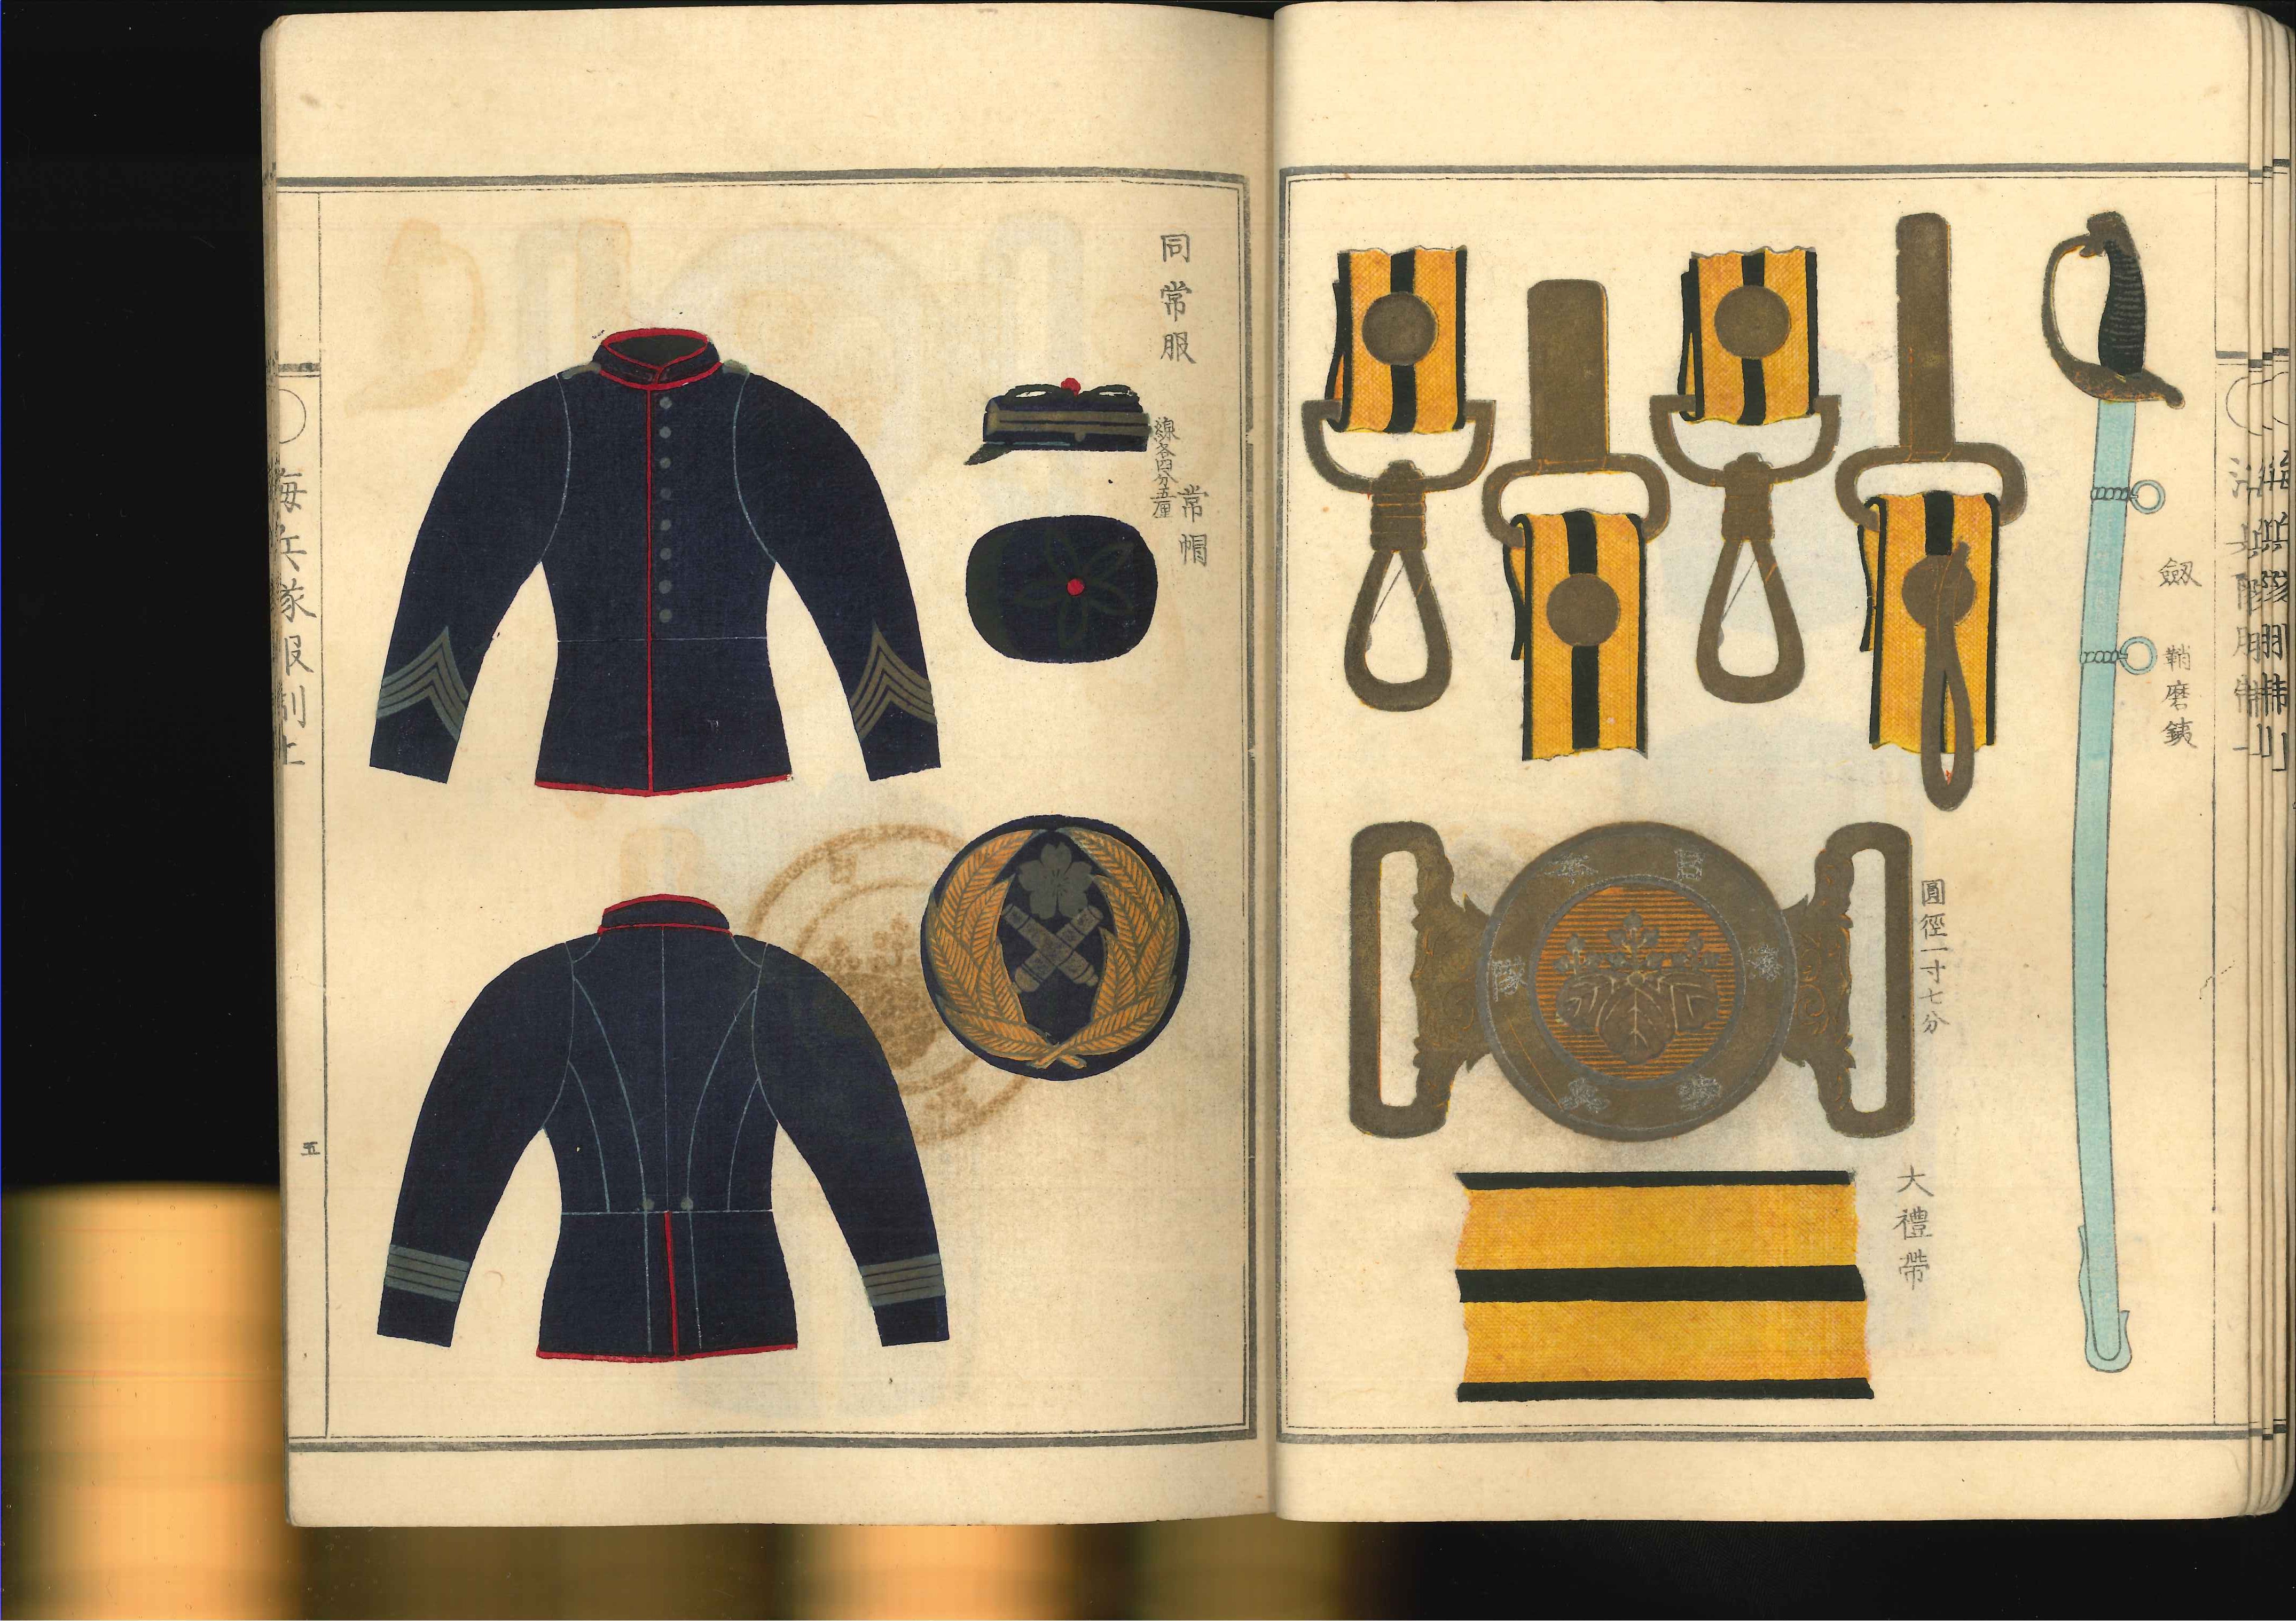 Four volumes on Meiji era uniforms